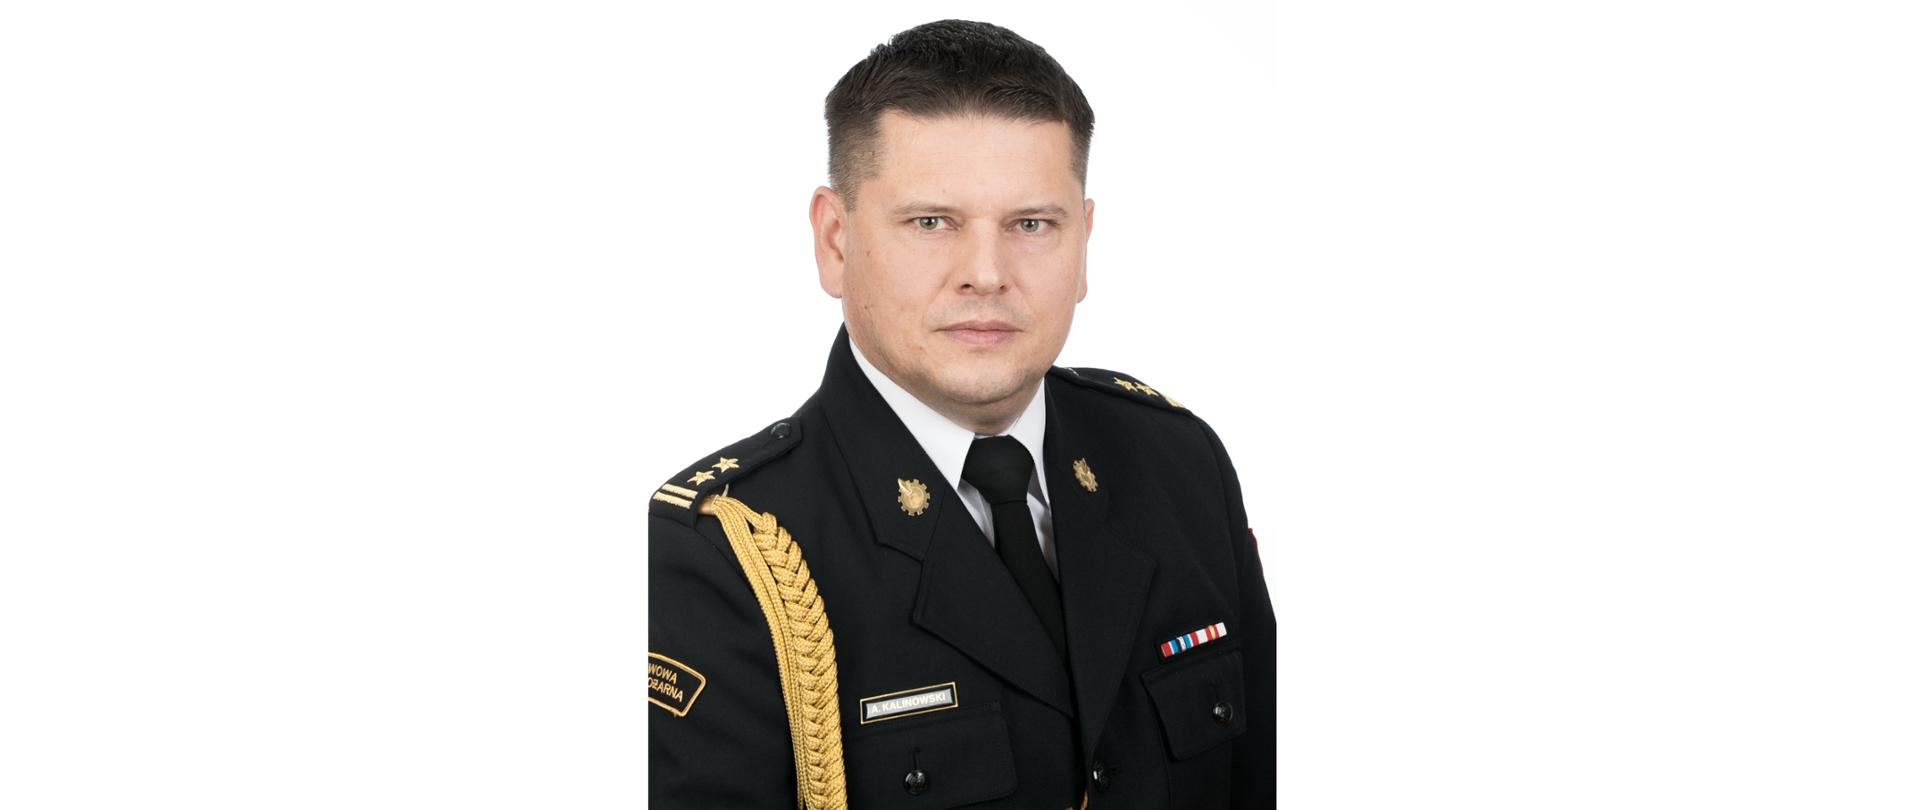 Zdjęcie portretowe komendanta bryg. Andrzeja Kalinowskiego na białym tle w mundurze galowym.